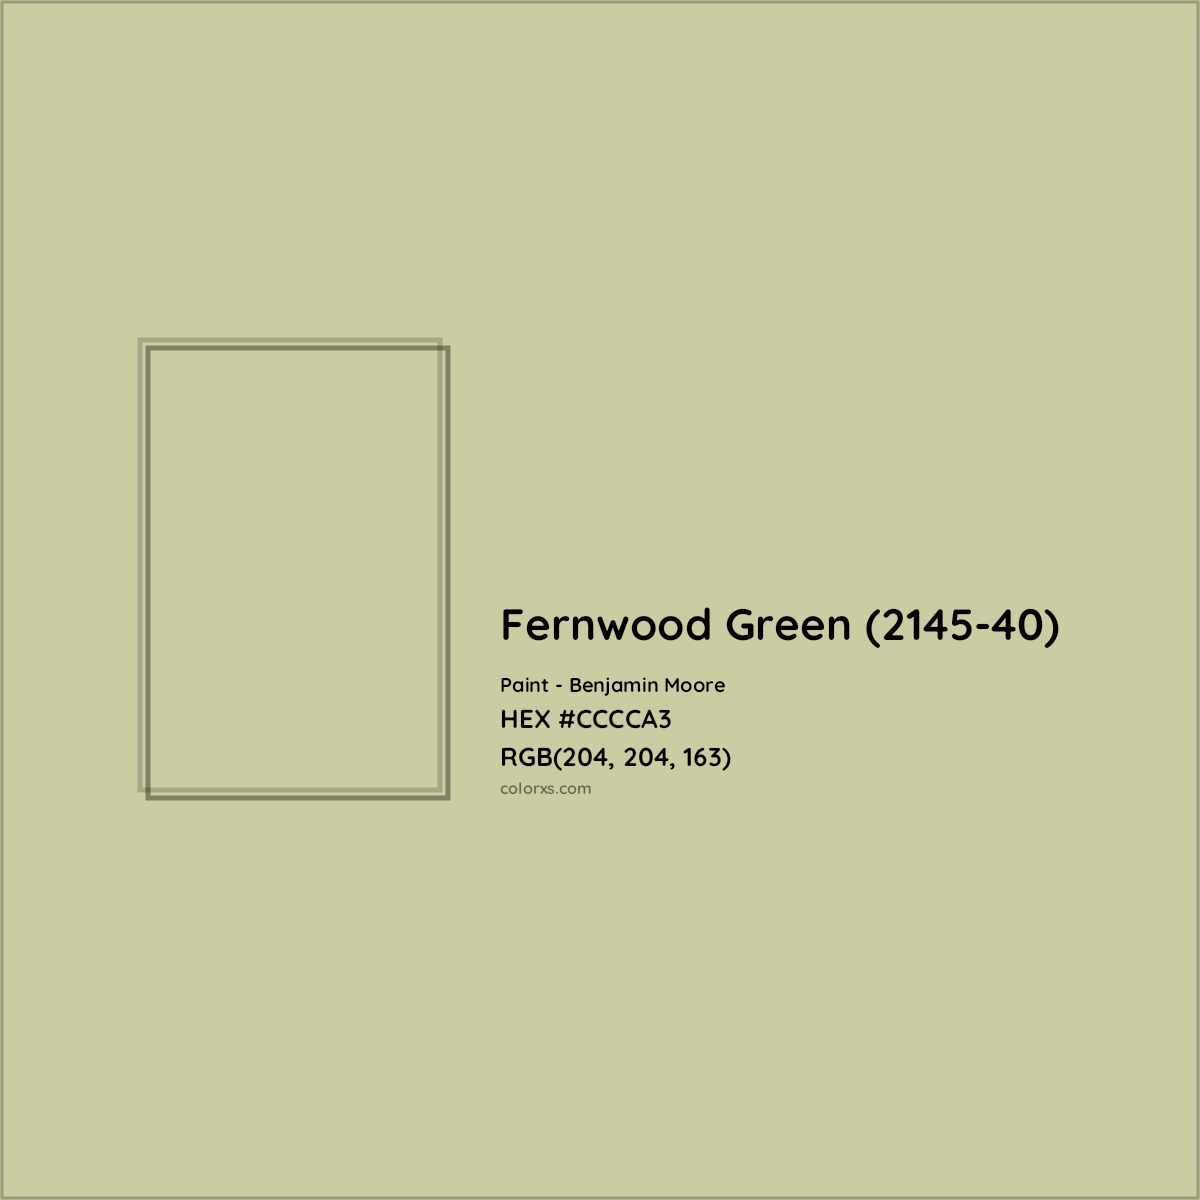 HEX #CCCCA3 Fernwood Green (2145-40) Paint Benjamin Moore - Color Code